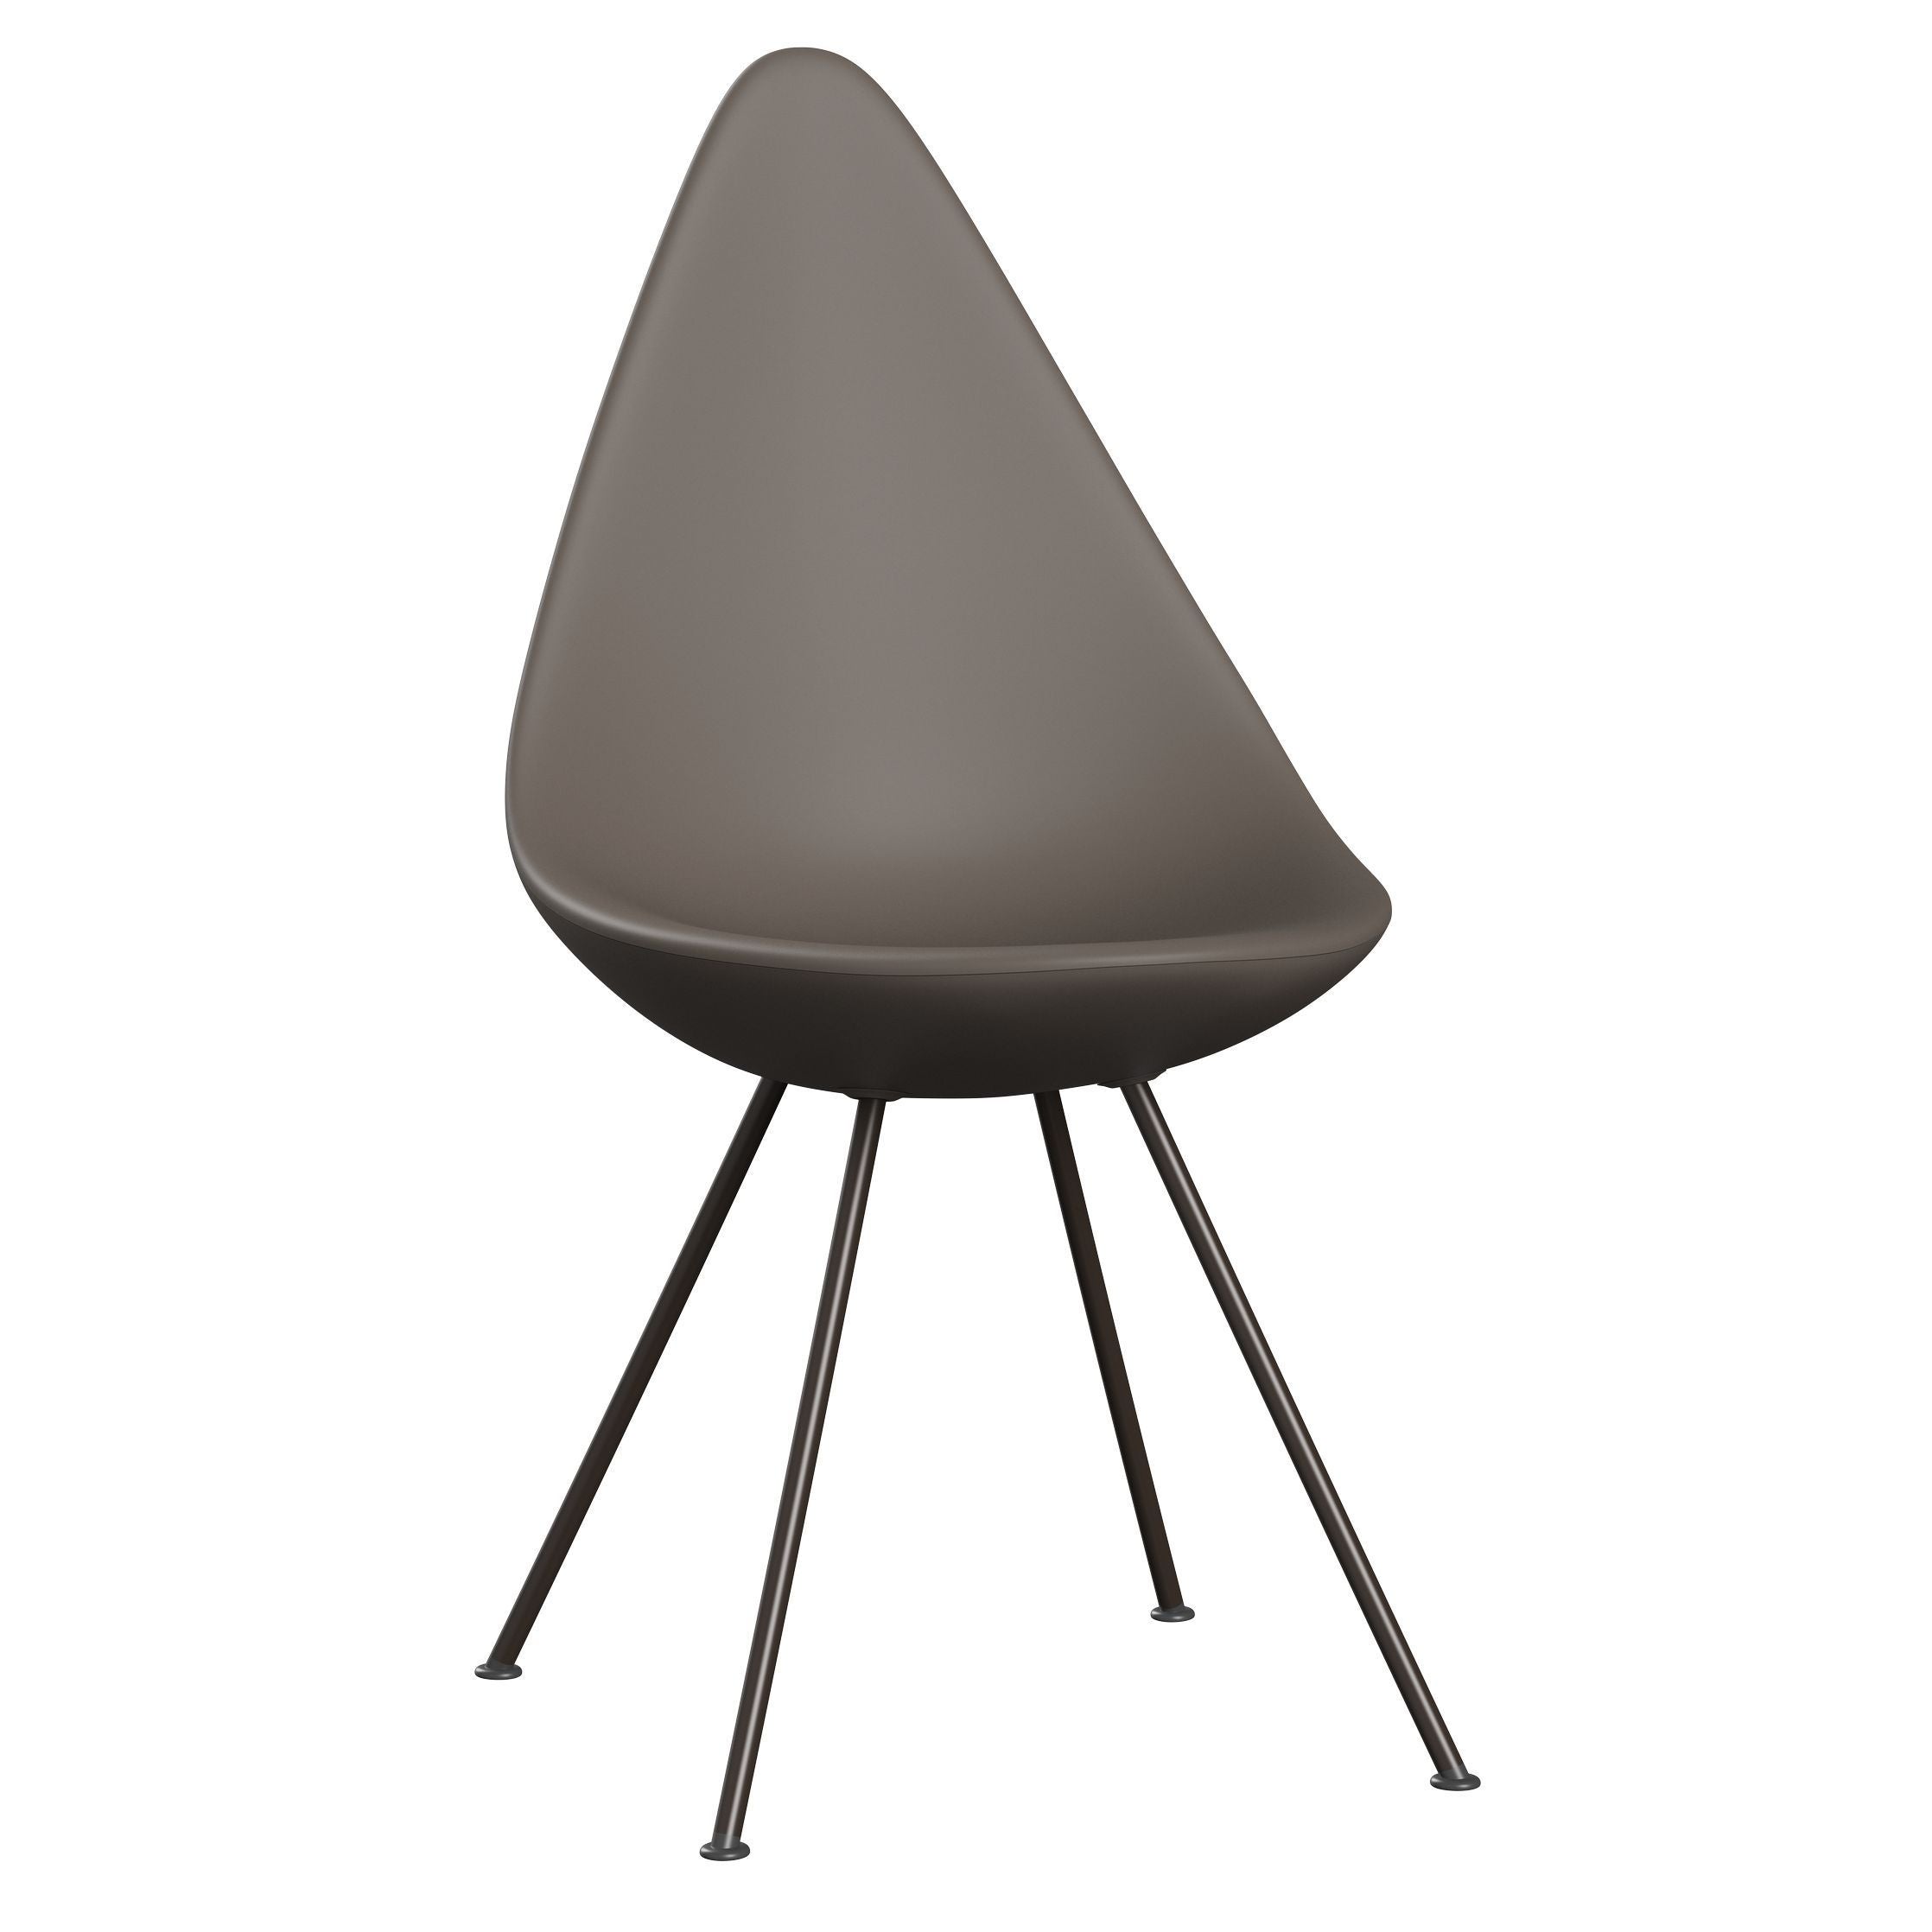 弗里茨·汉森（Fritz Hansen）滴椅，棕色青铜/深粘土